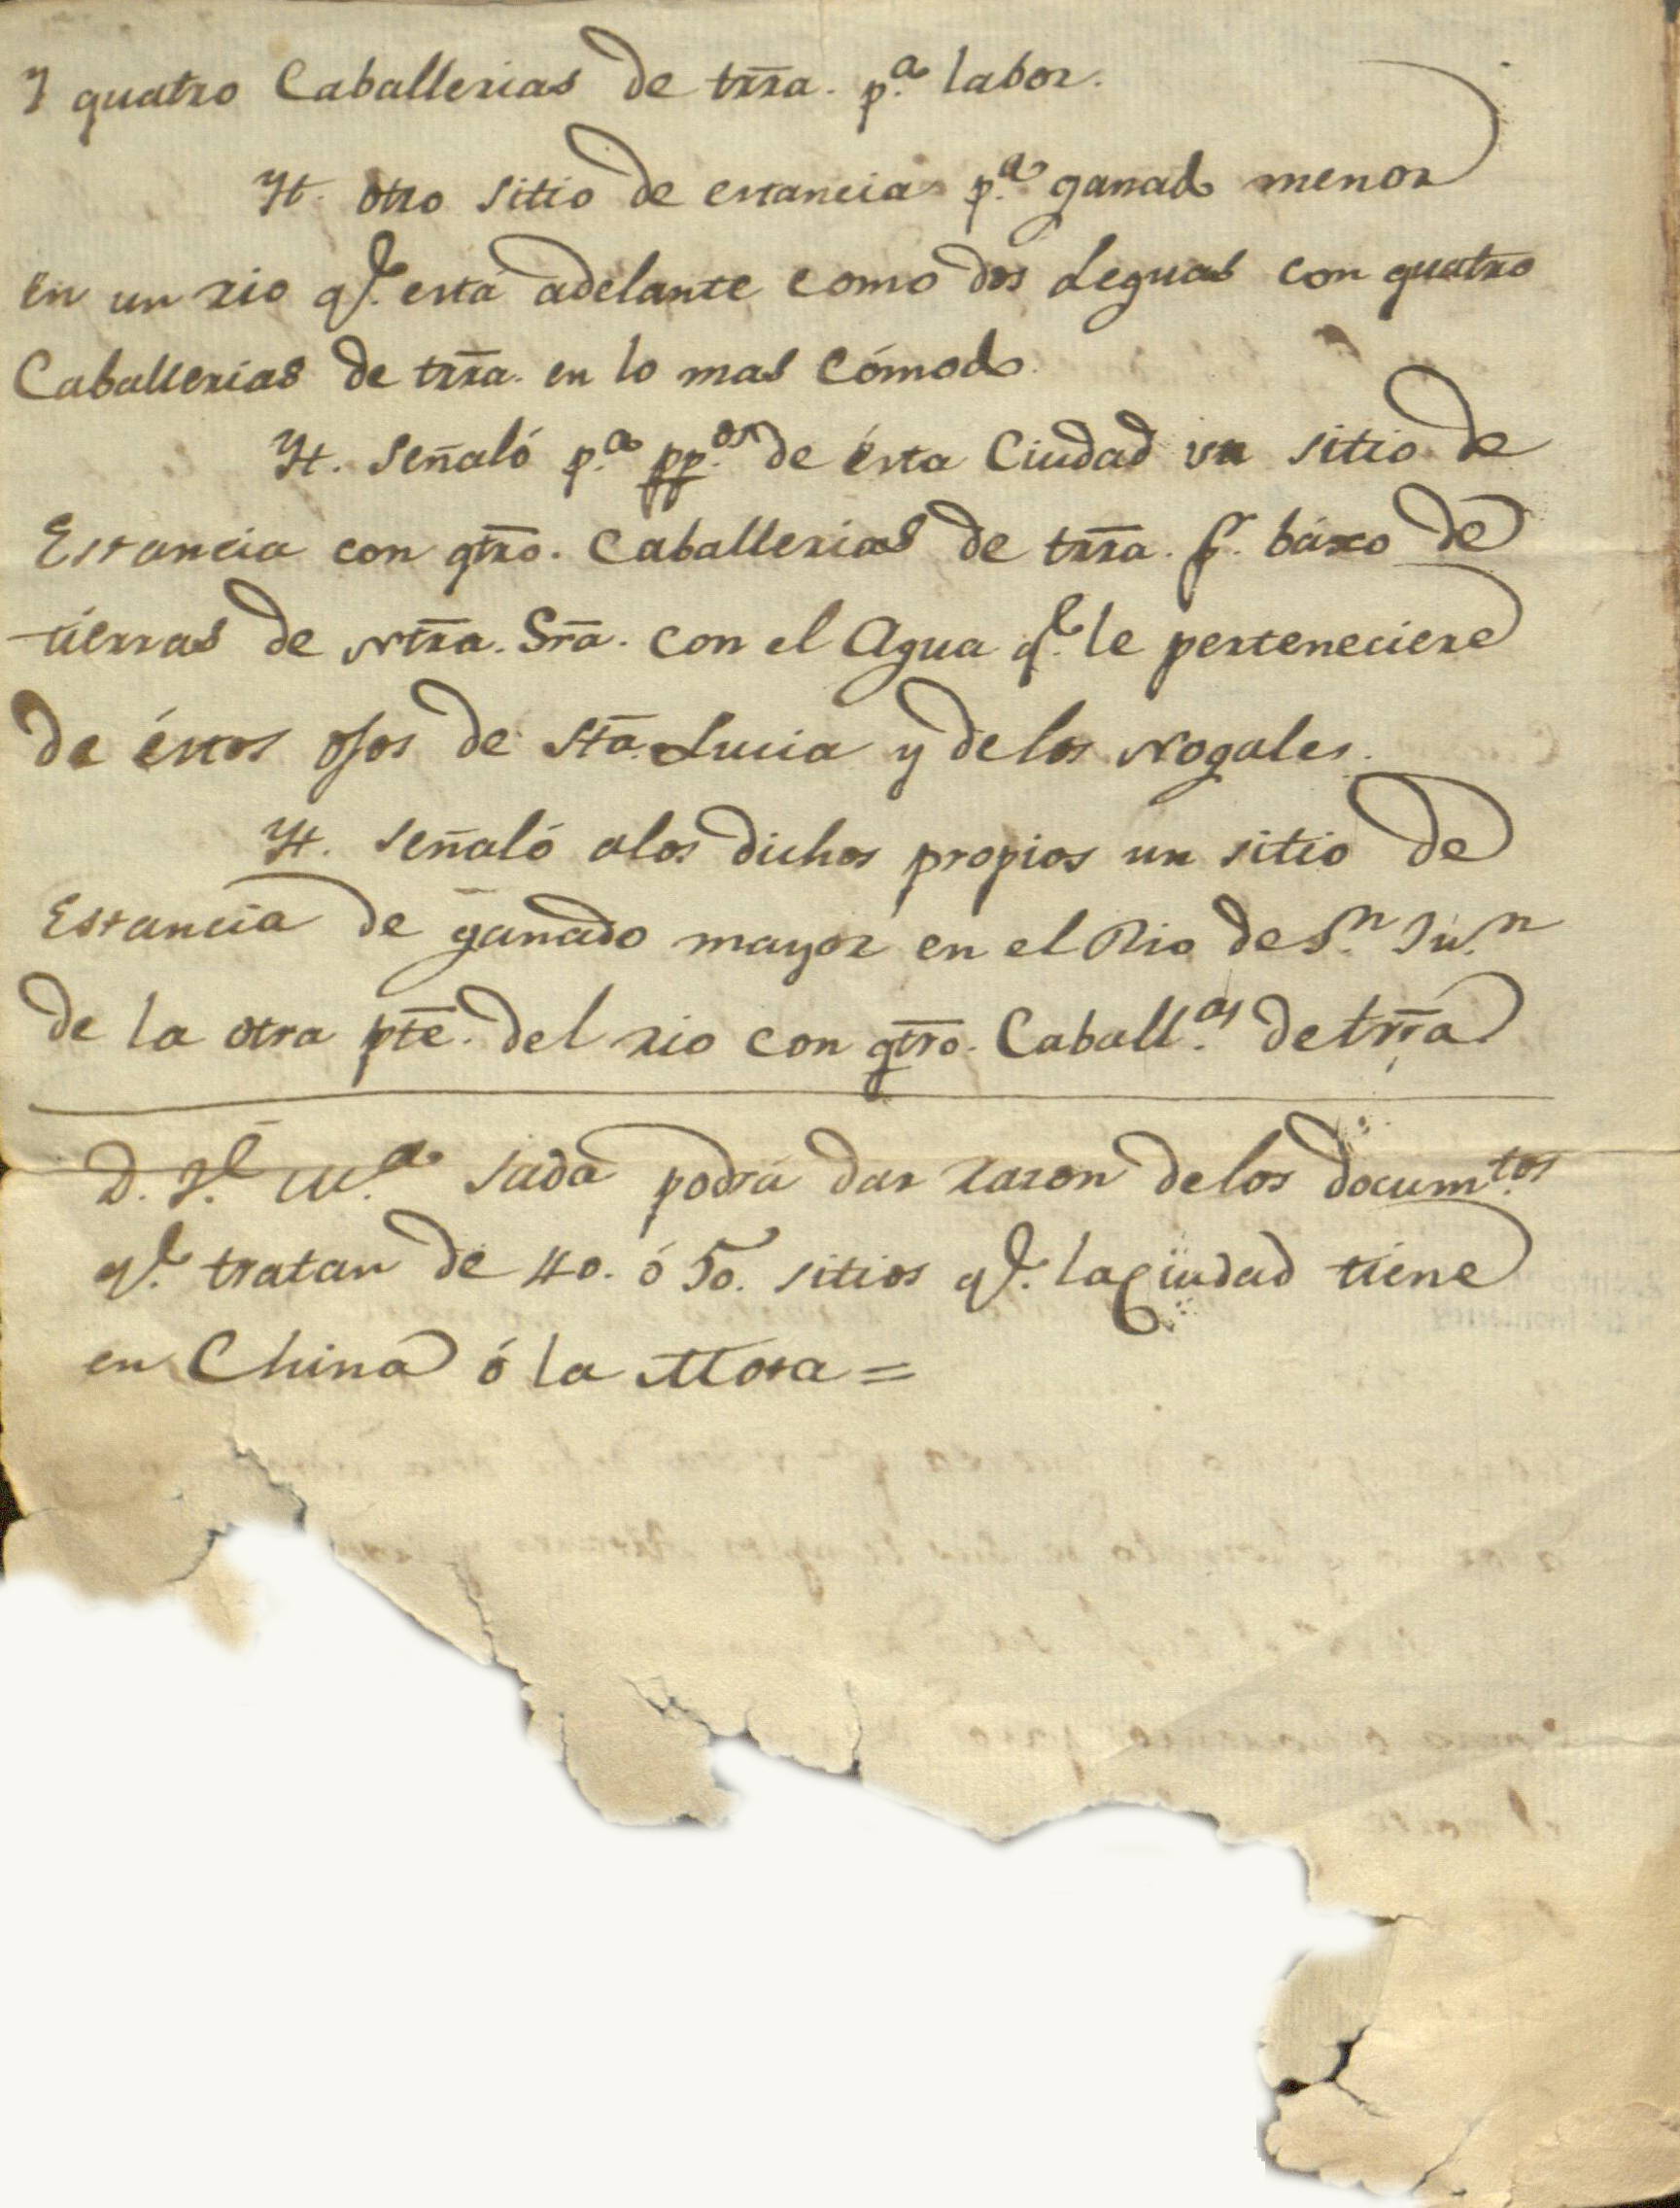 Acta de las mercedes a la virgen fechada el 20 de septiembre de 1596 por orden del capitán Diego de Montemayor.